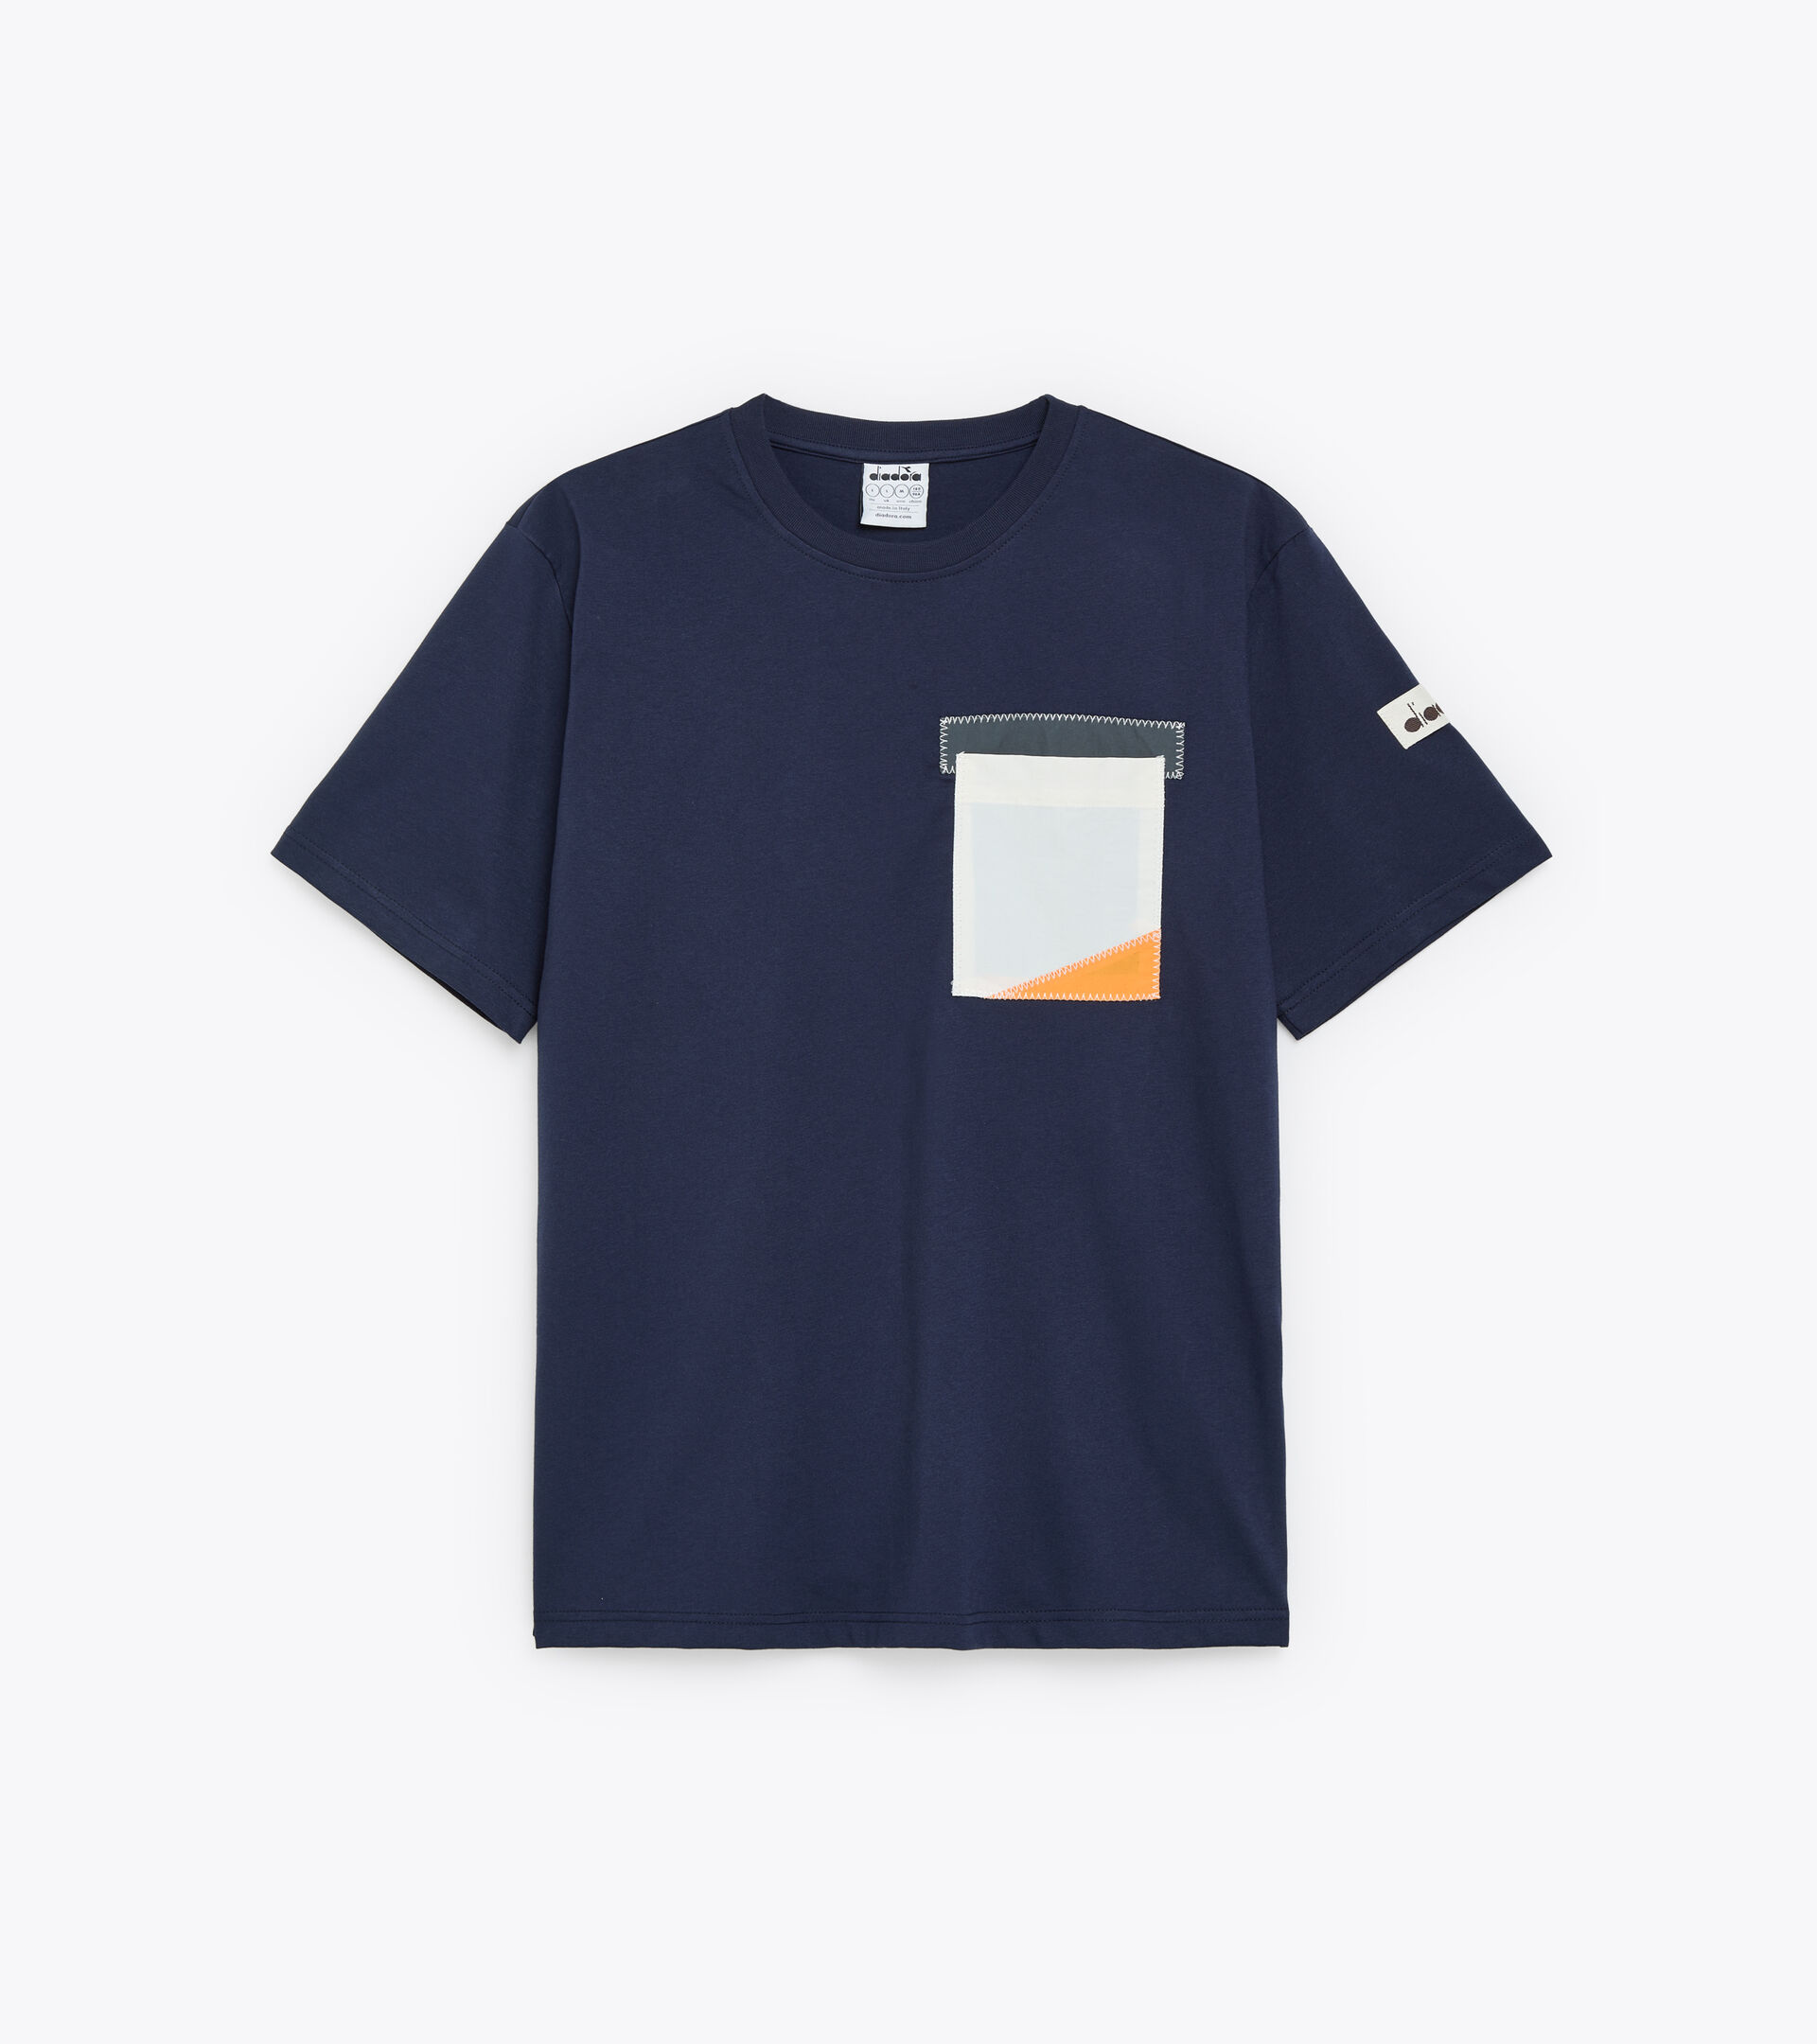 T-shirt- Made in Italy - Homme T-SHIRT SS 2030 BLEU CORSAIRE - Diadora